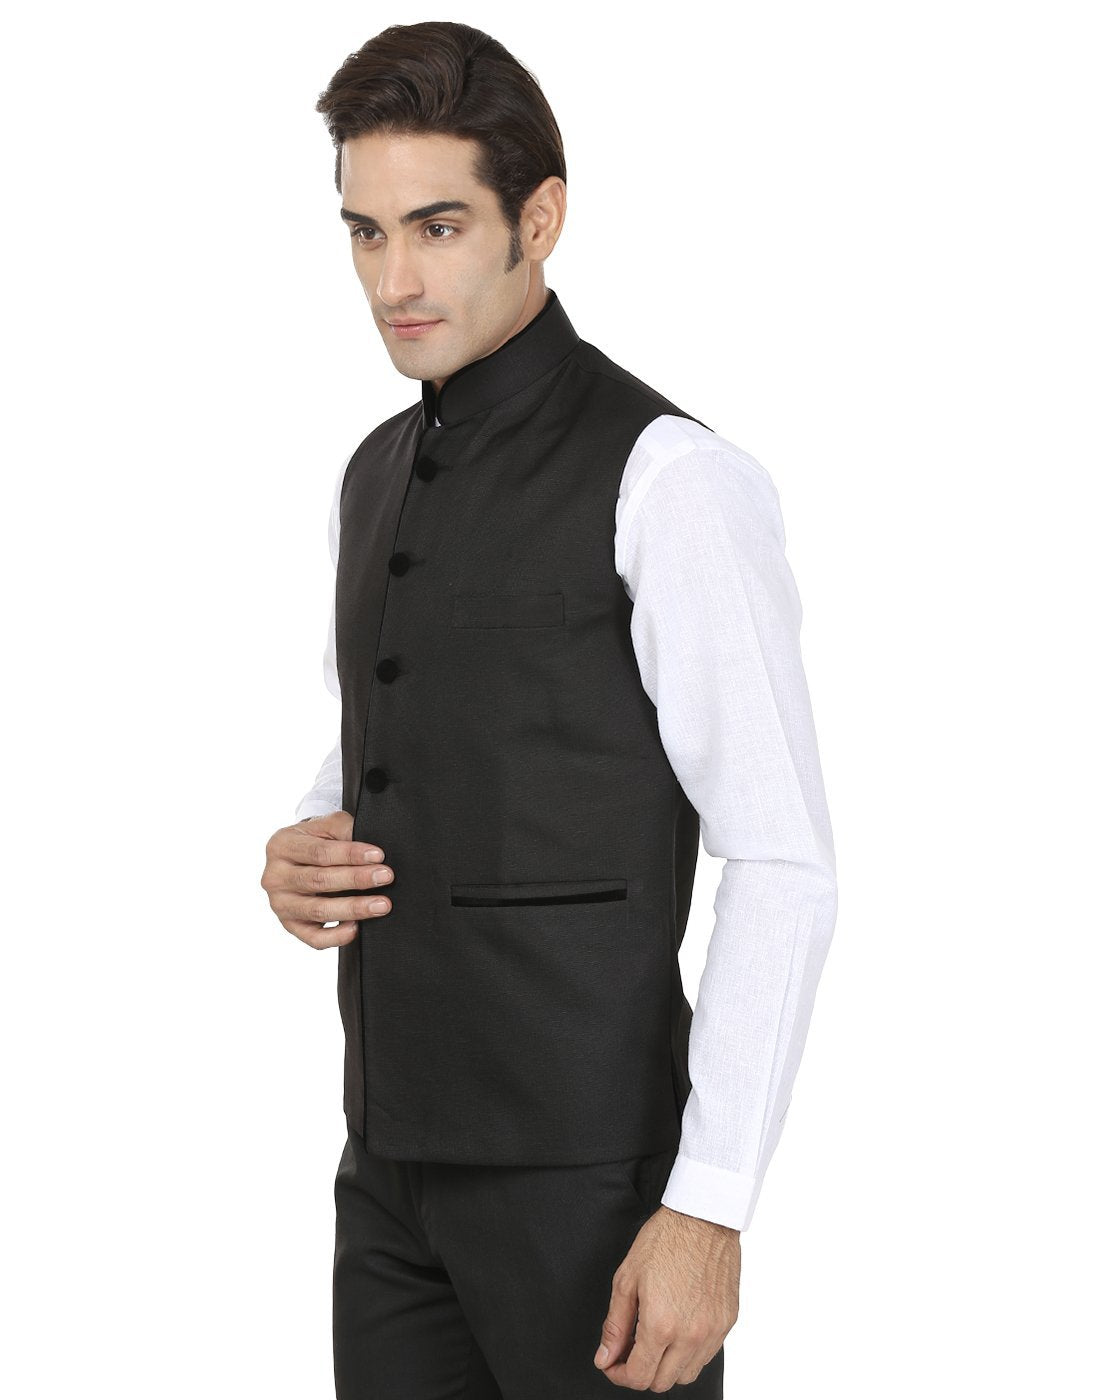 Polyester Cotton Black Nehru Jacket